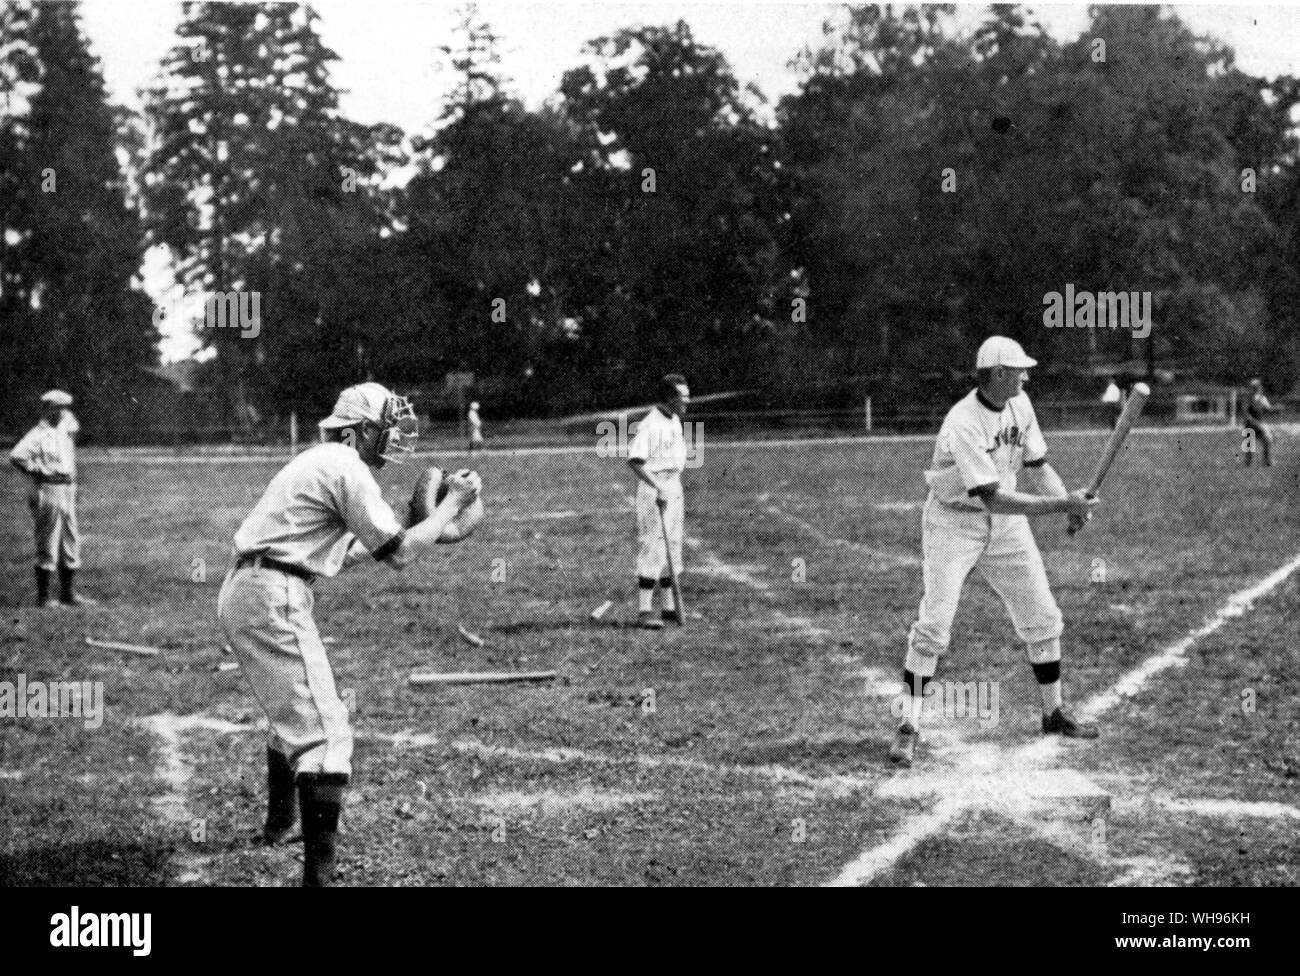 Partita di Baseball USA v Svezia Svezia Welin racing alla prima base dopo un breve colpo. Blanchard alla prima base in corrispondenza dei Giochi Olimpici 1912 Stoccolma Foto Stock